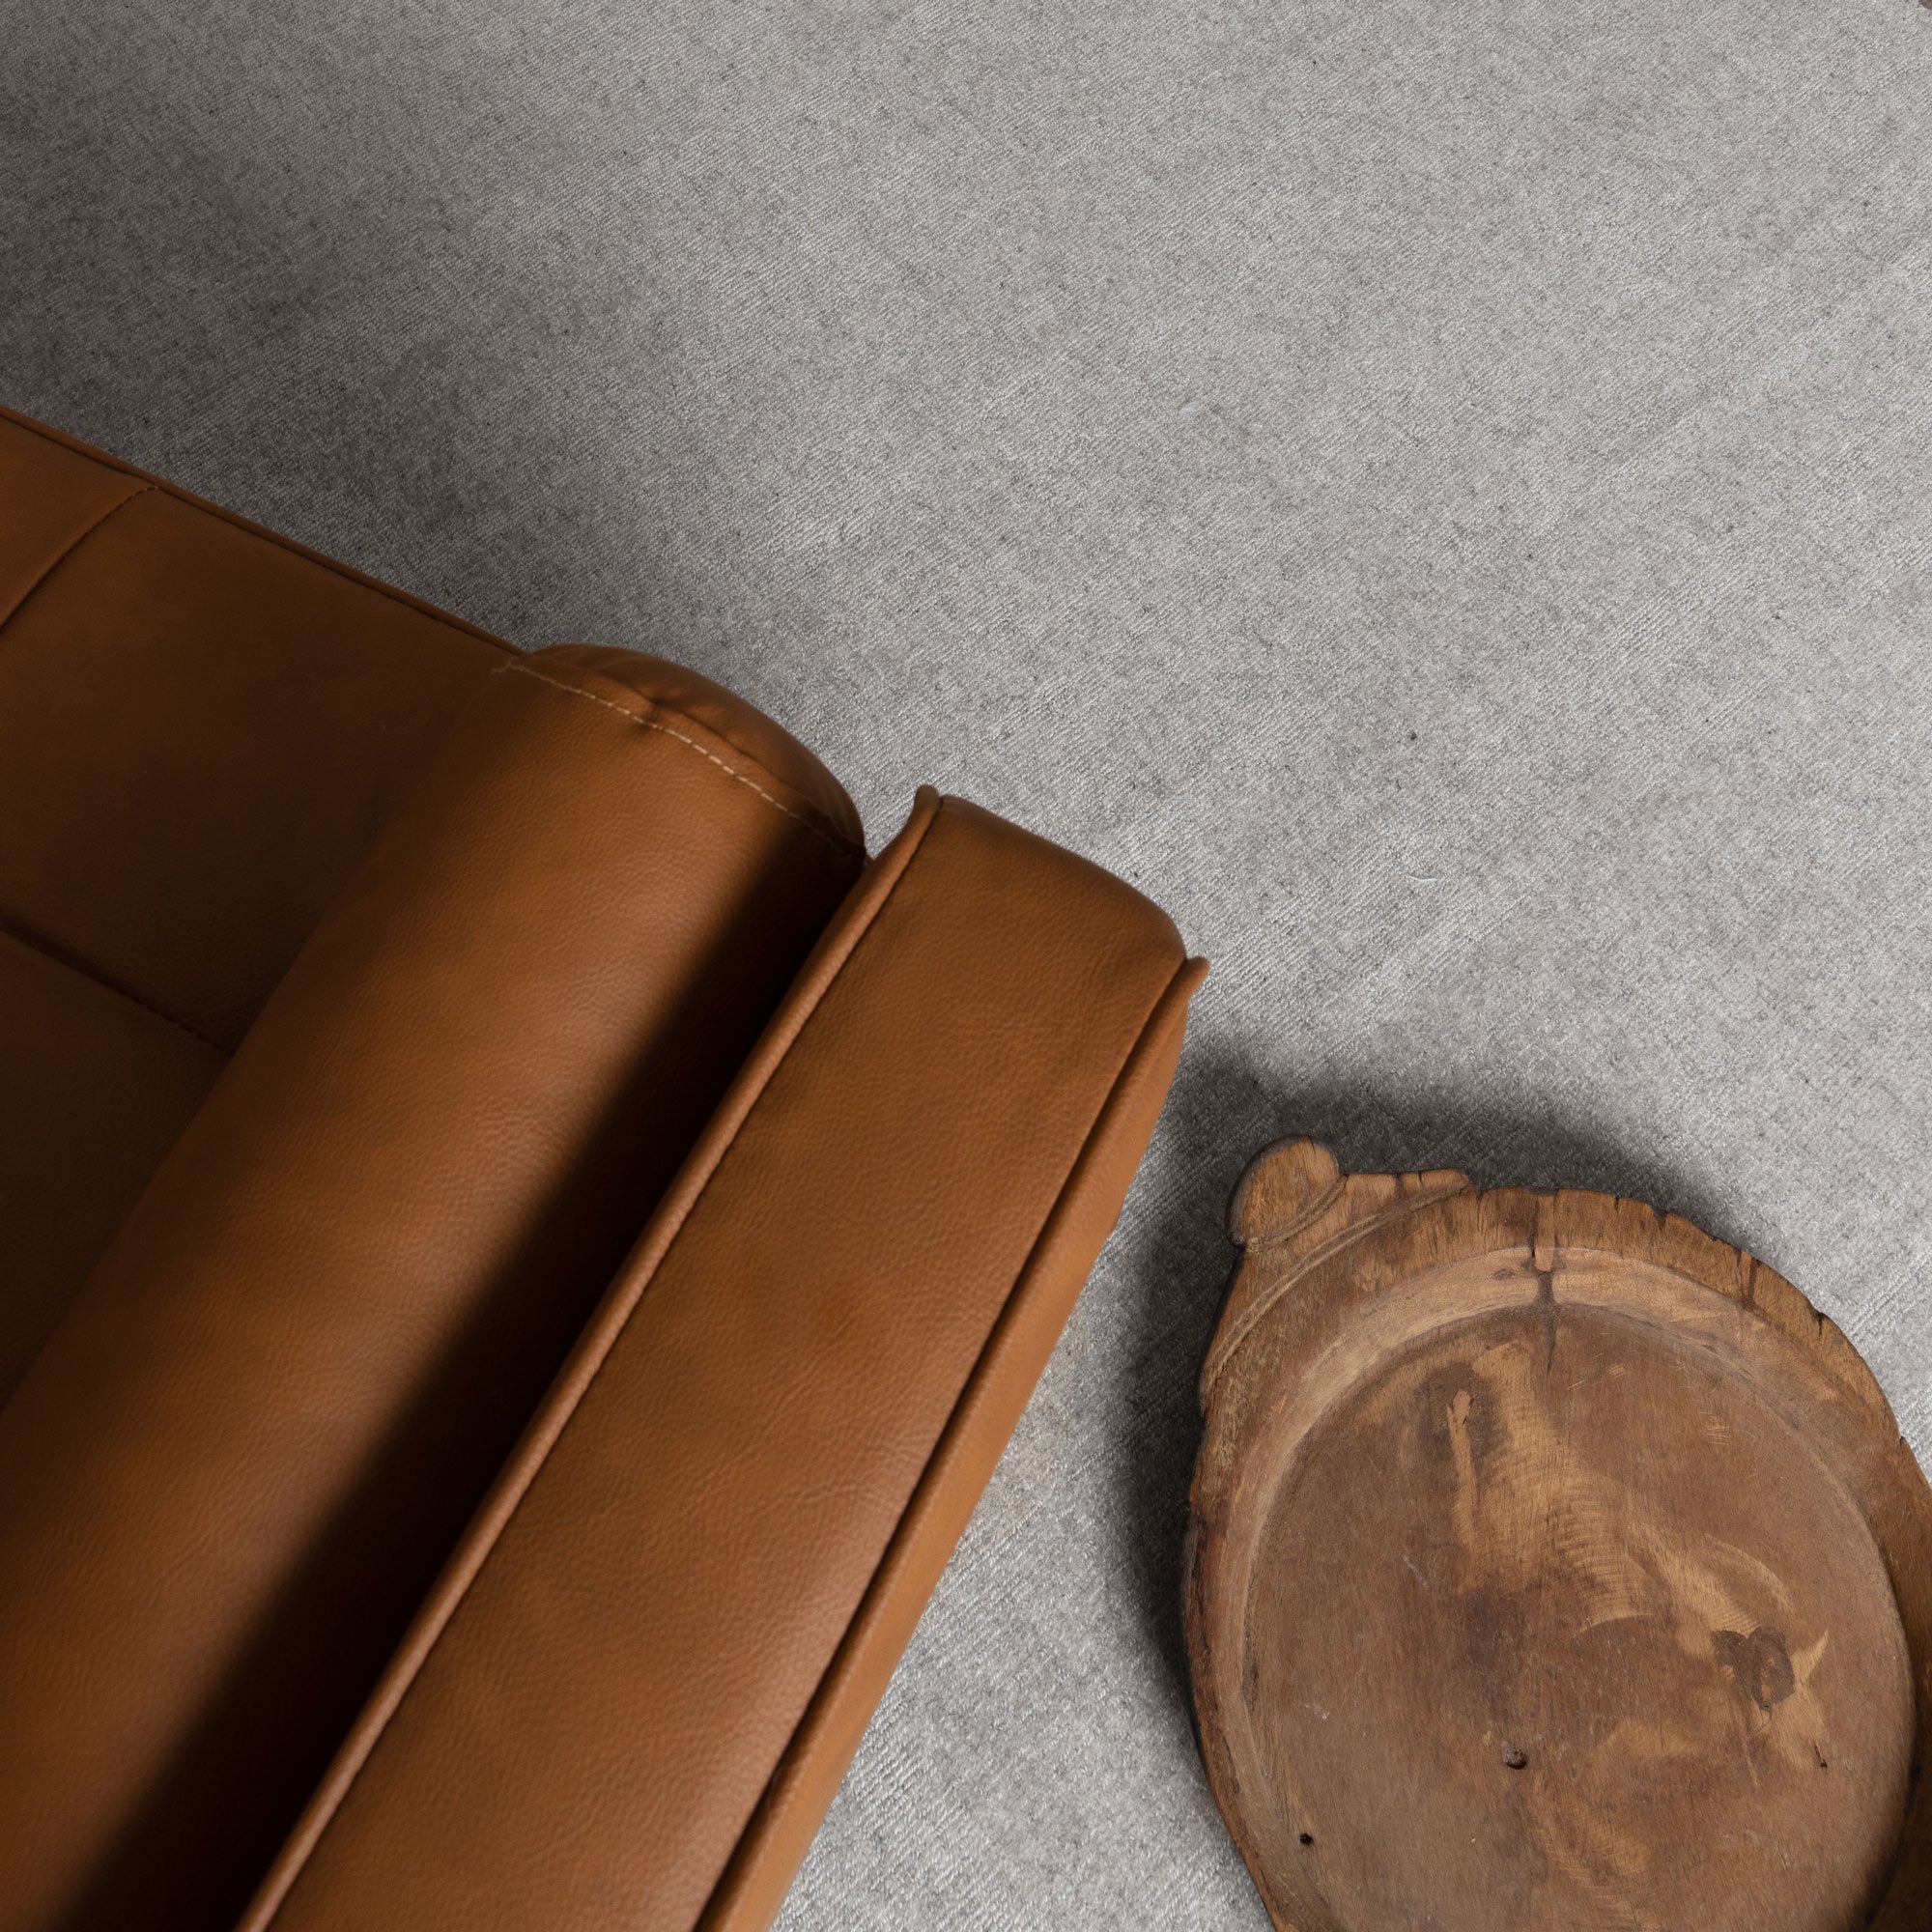 Arizona Silver Wool Rug with tan leather sofa